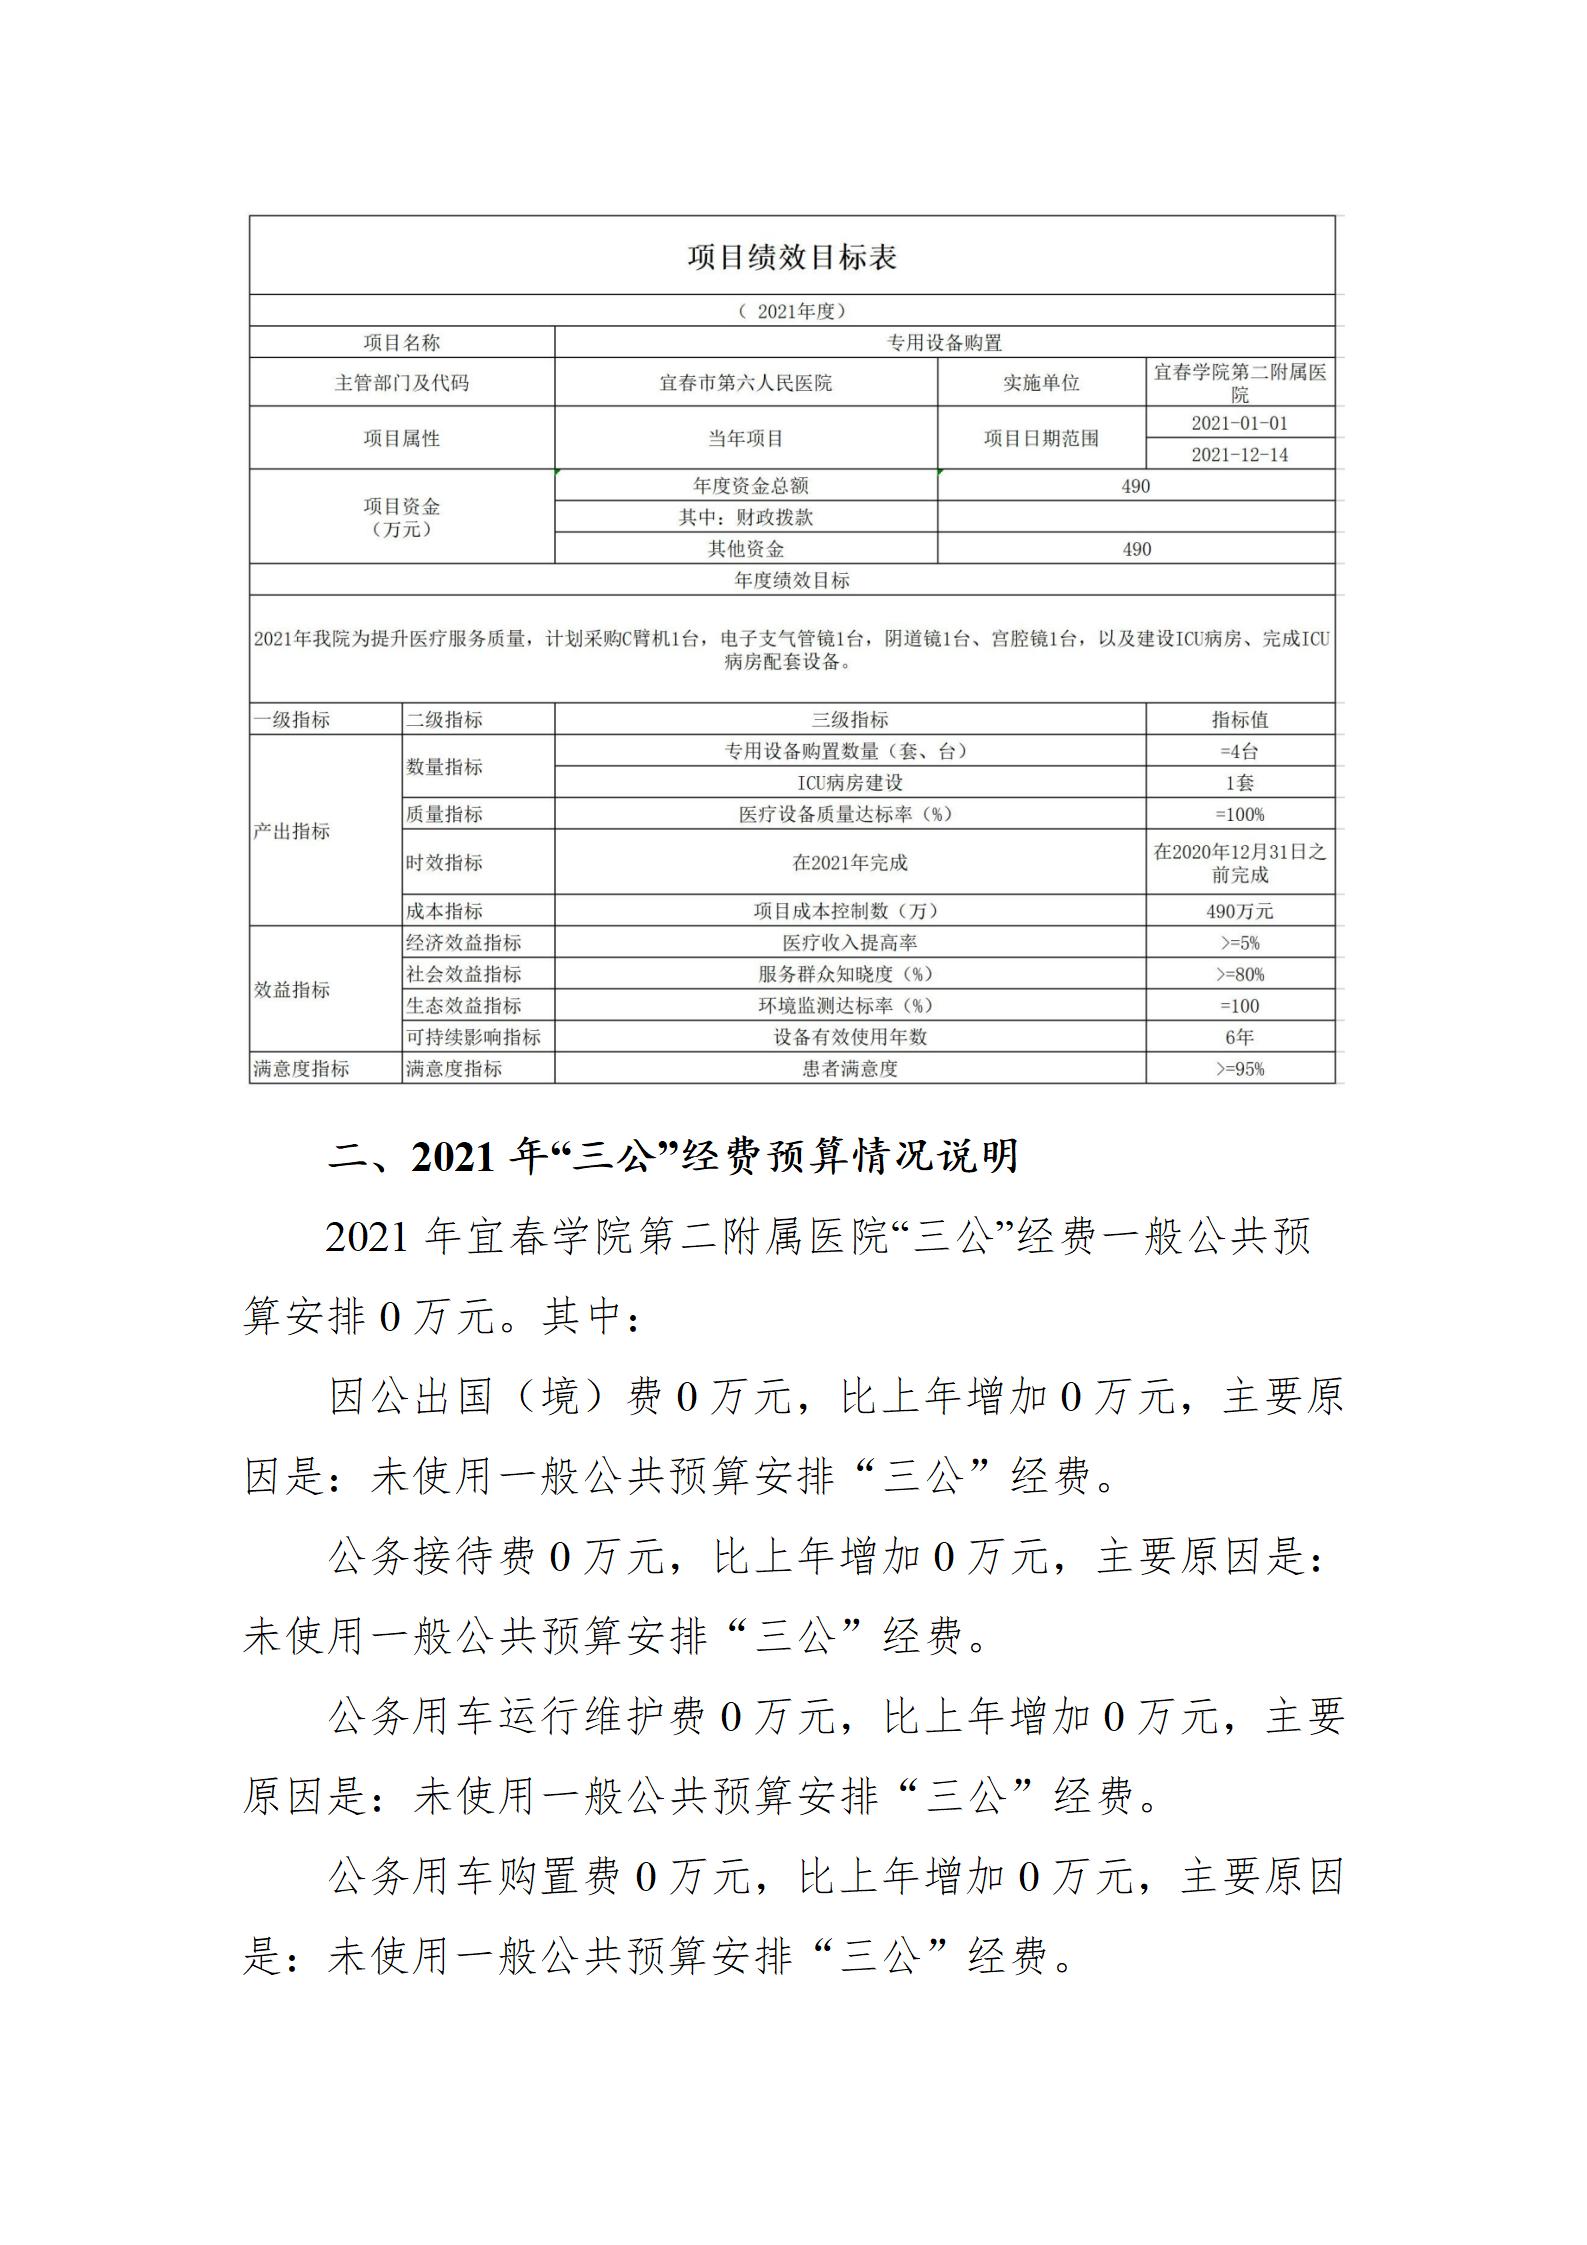 宜春学院第二附属医院2021年部门预算公开说明2022.9.13晚_09.jpg